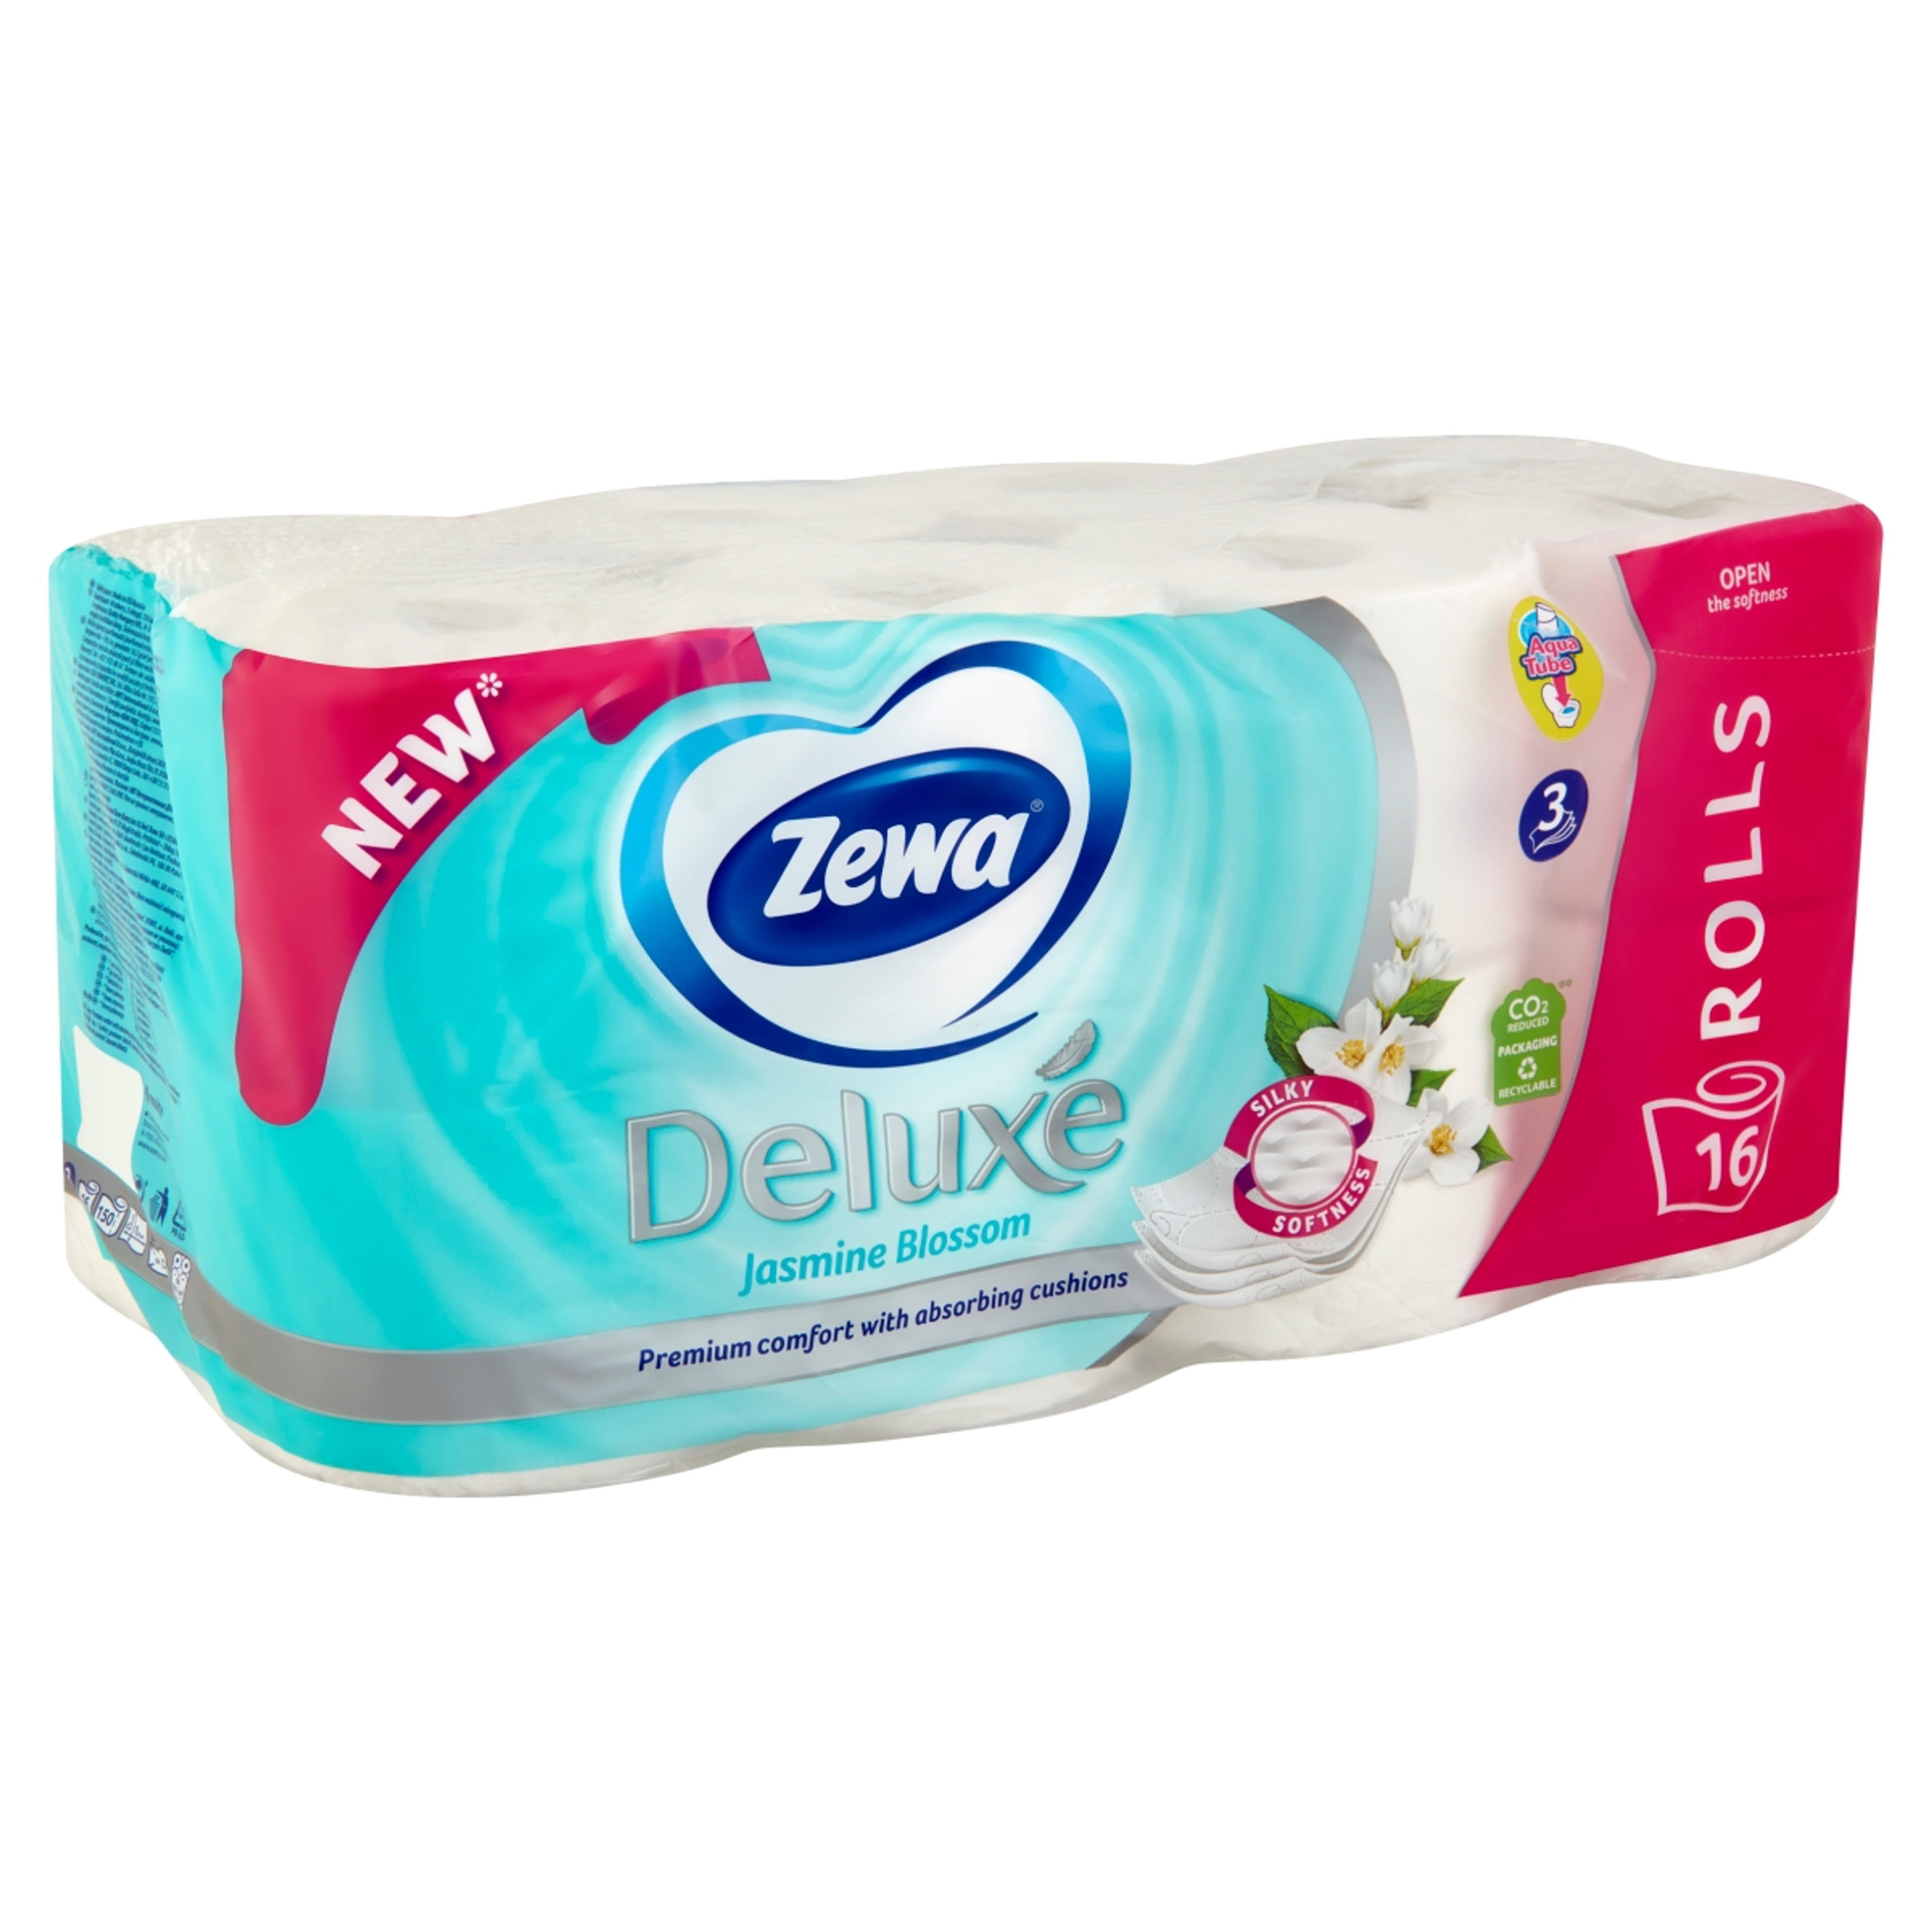 Zewa Deluxe Jasmine Blossom 3 rétegű toalettpapír - 16 tekercs-2